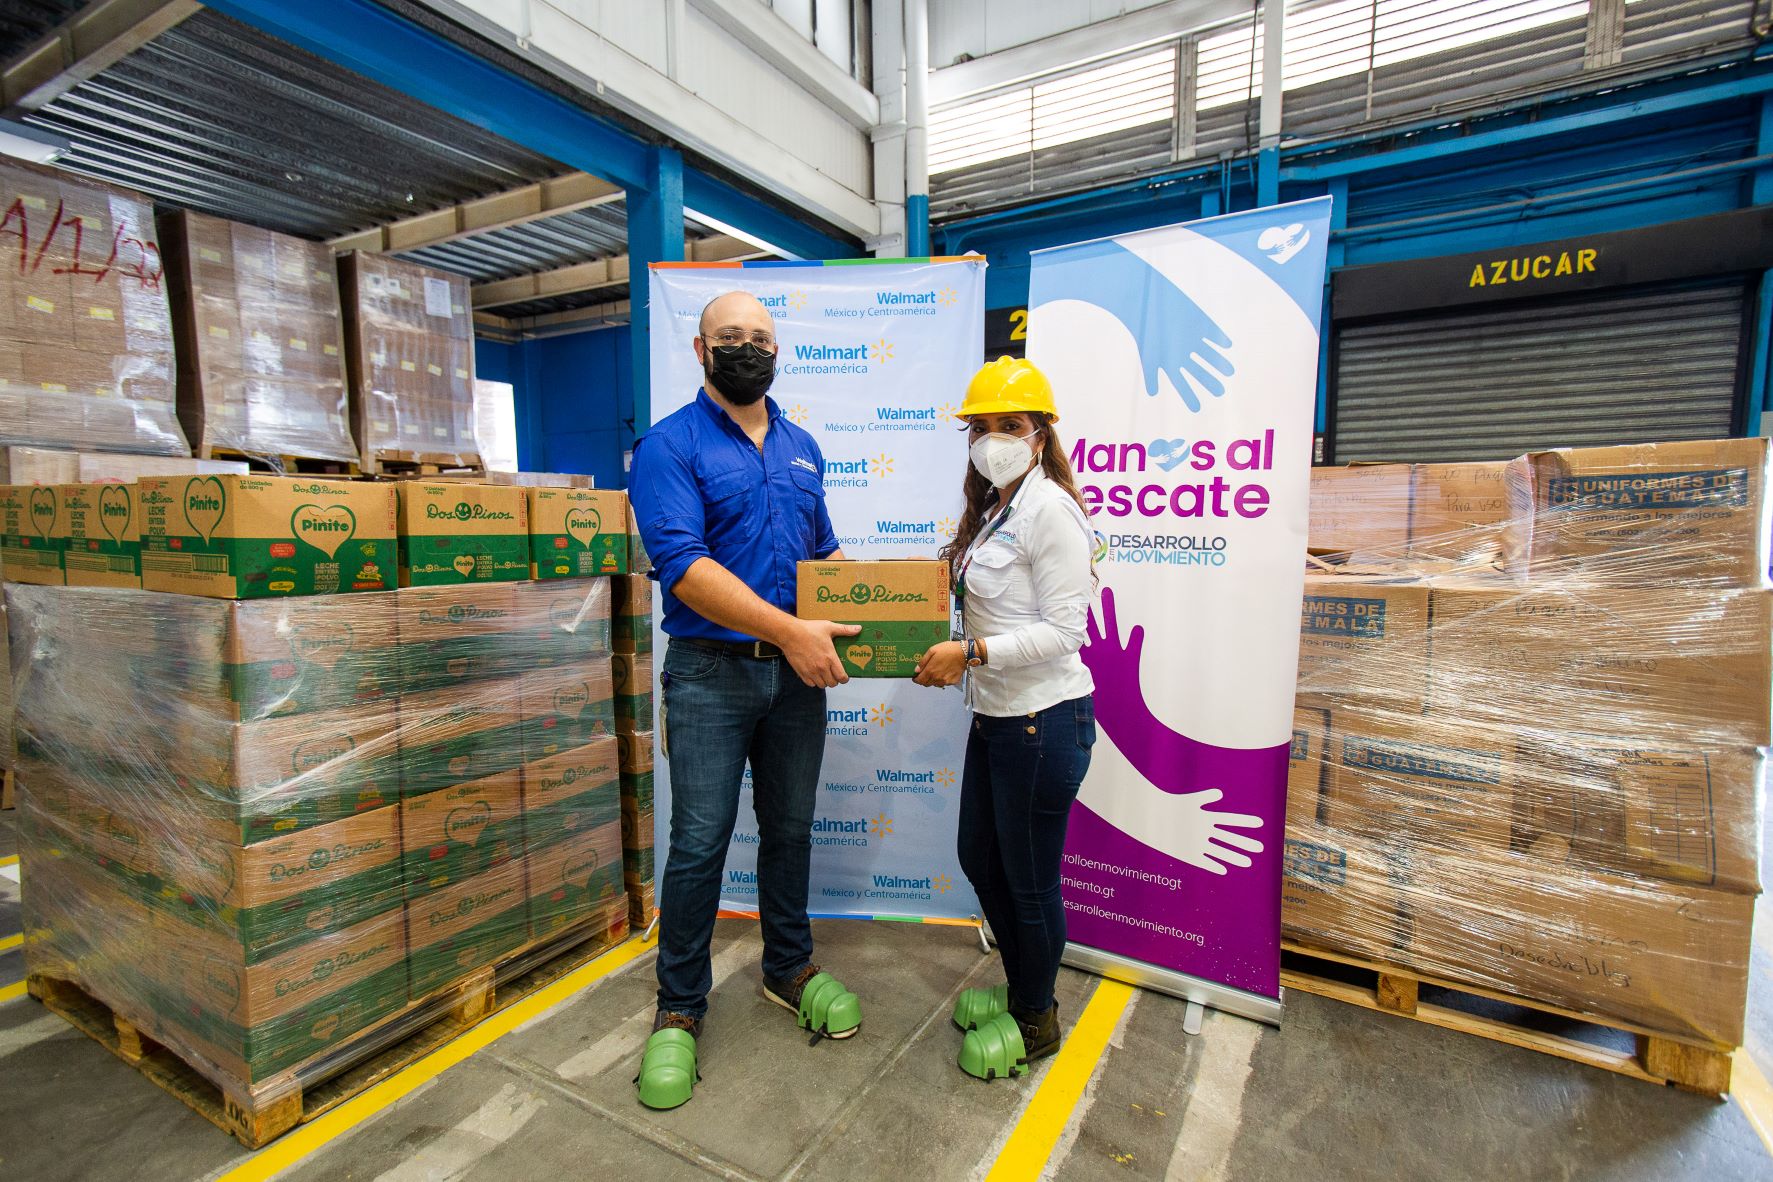 Walmart realizó dos importantes donaciones al banco de alimentos Desarrollo en Movimiento en Guatemala